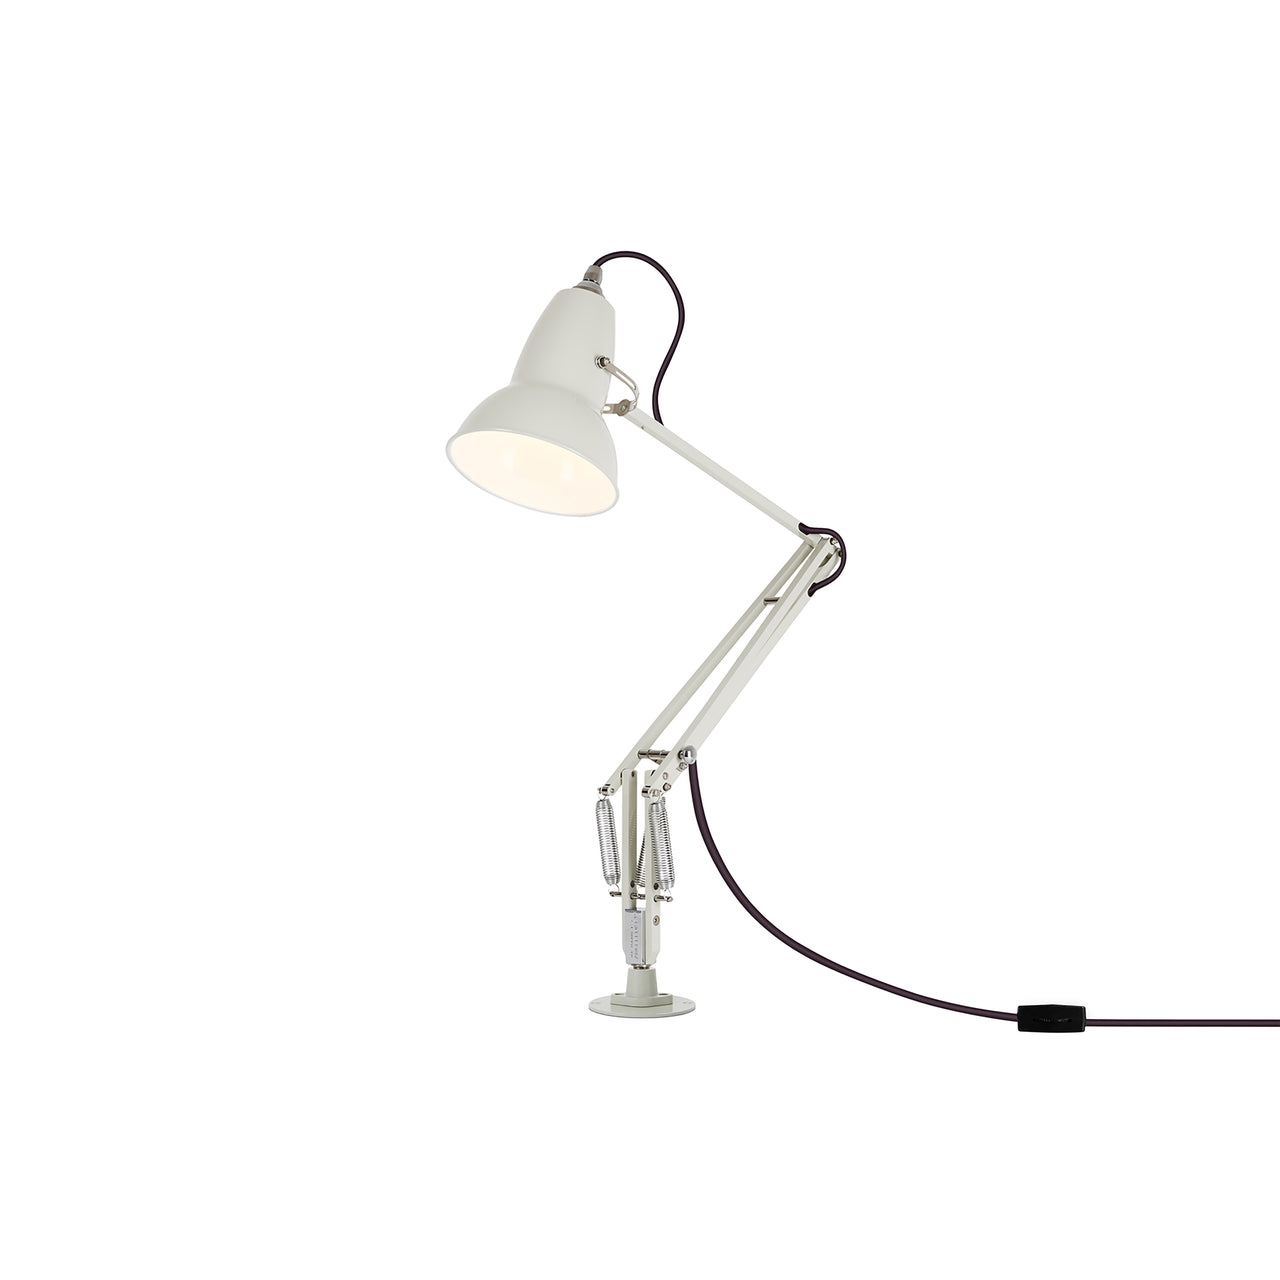 Original 1227 Desk Lamp with Insert: Linen White